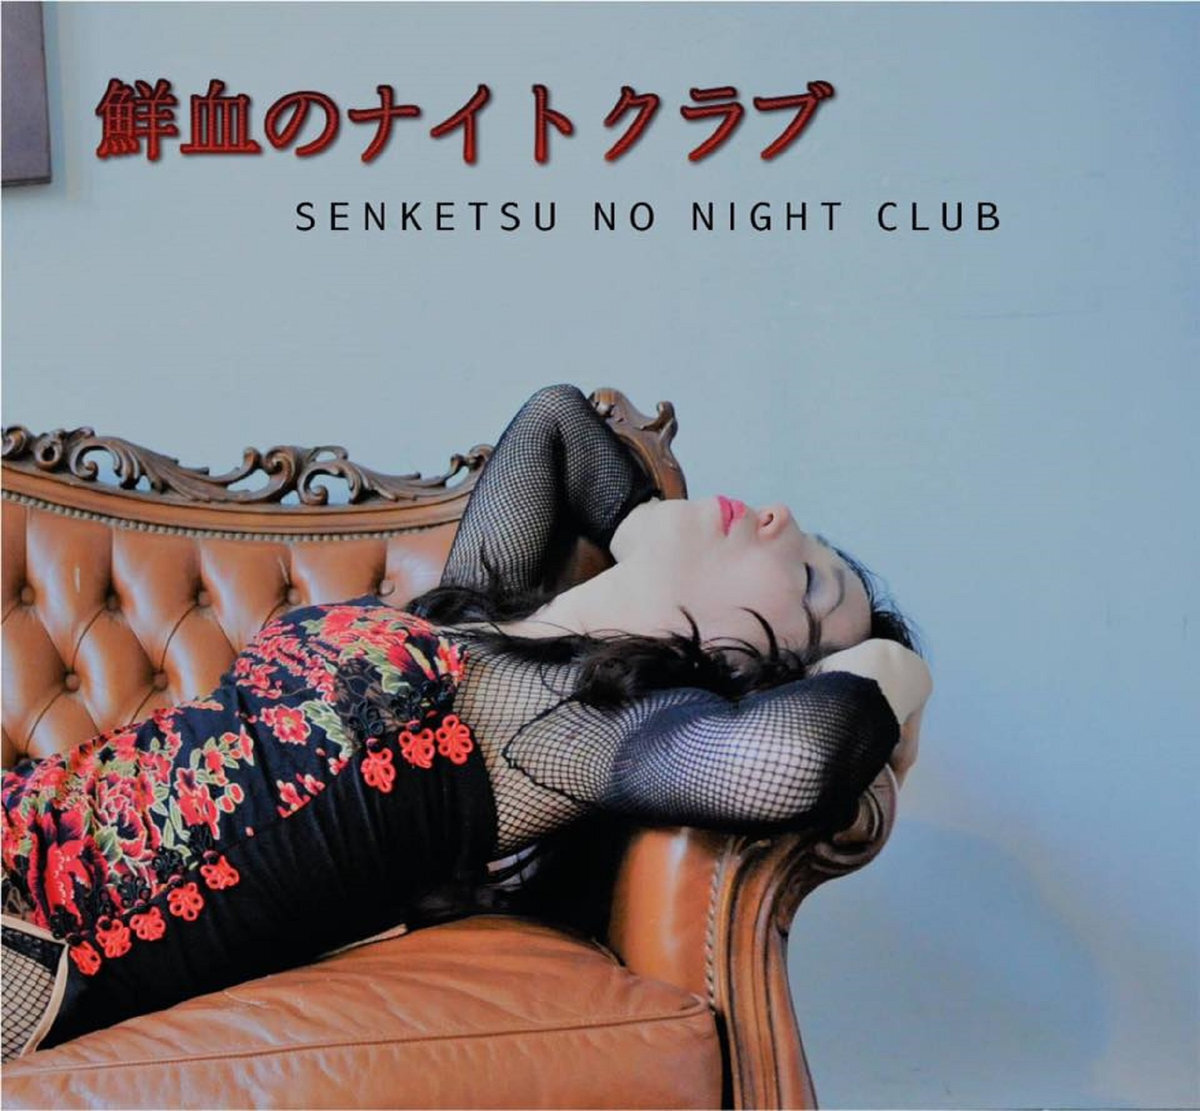 Senketsu No Night Club - SENKETSU NO NIGHT CLUB